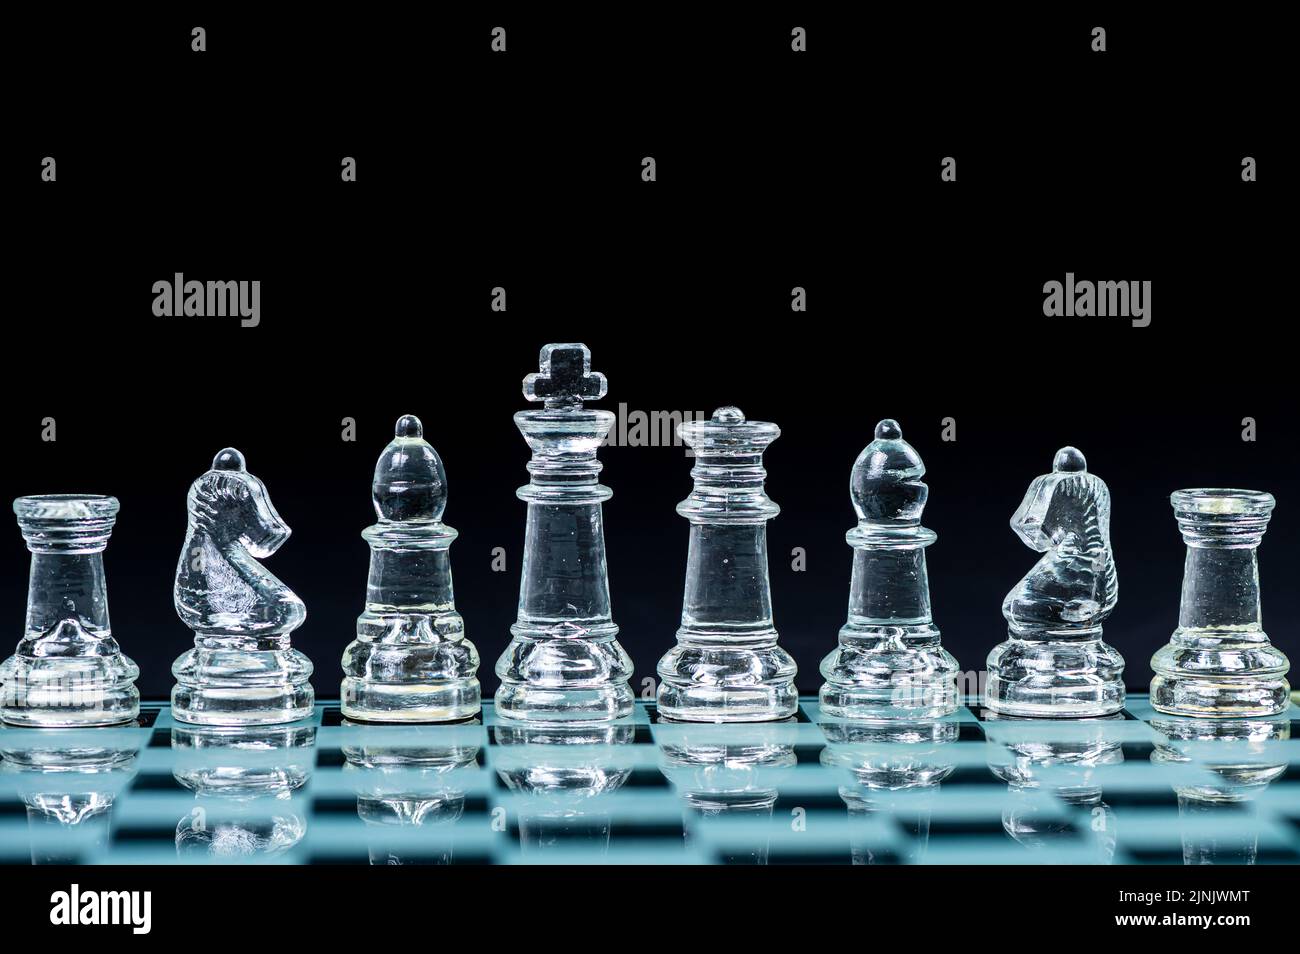 personnages d'échecs en verre transparent disposés en rangée et reflétant dans un échiquier en verre. Isolé sur le noir Banque D'Images